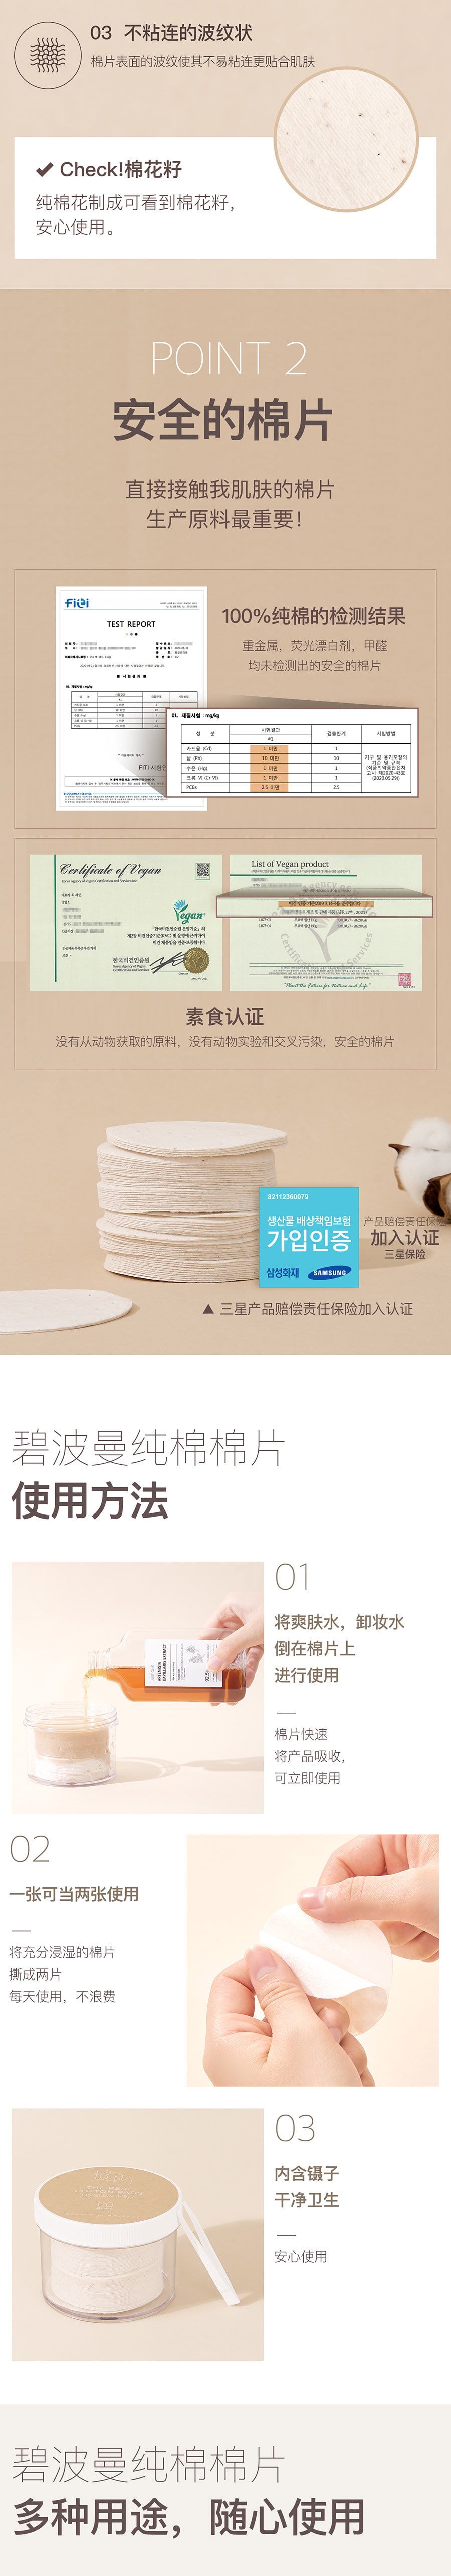 韓國BOM純棉棉片 濕敷棉 100%無螢光劑純棉材質 60片